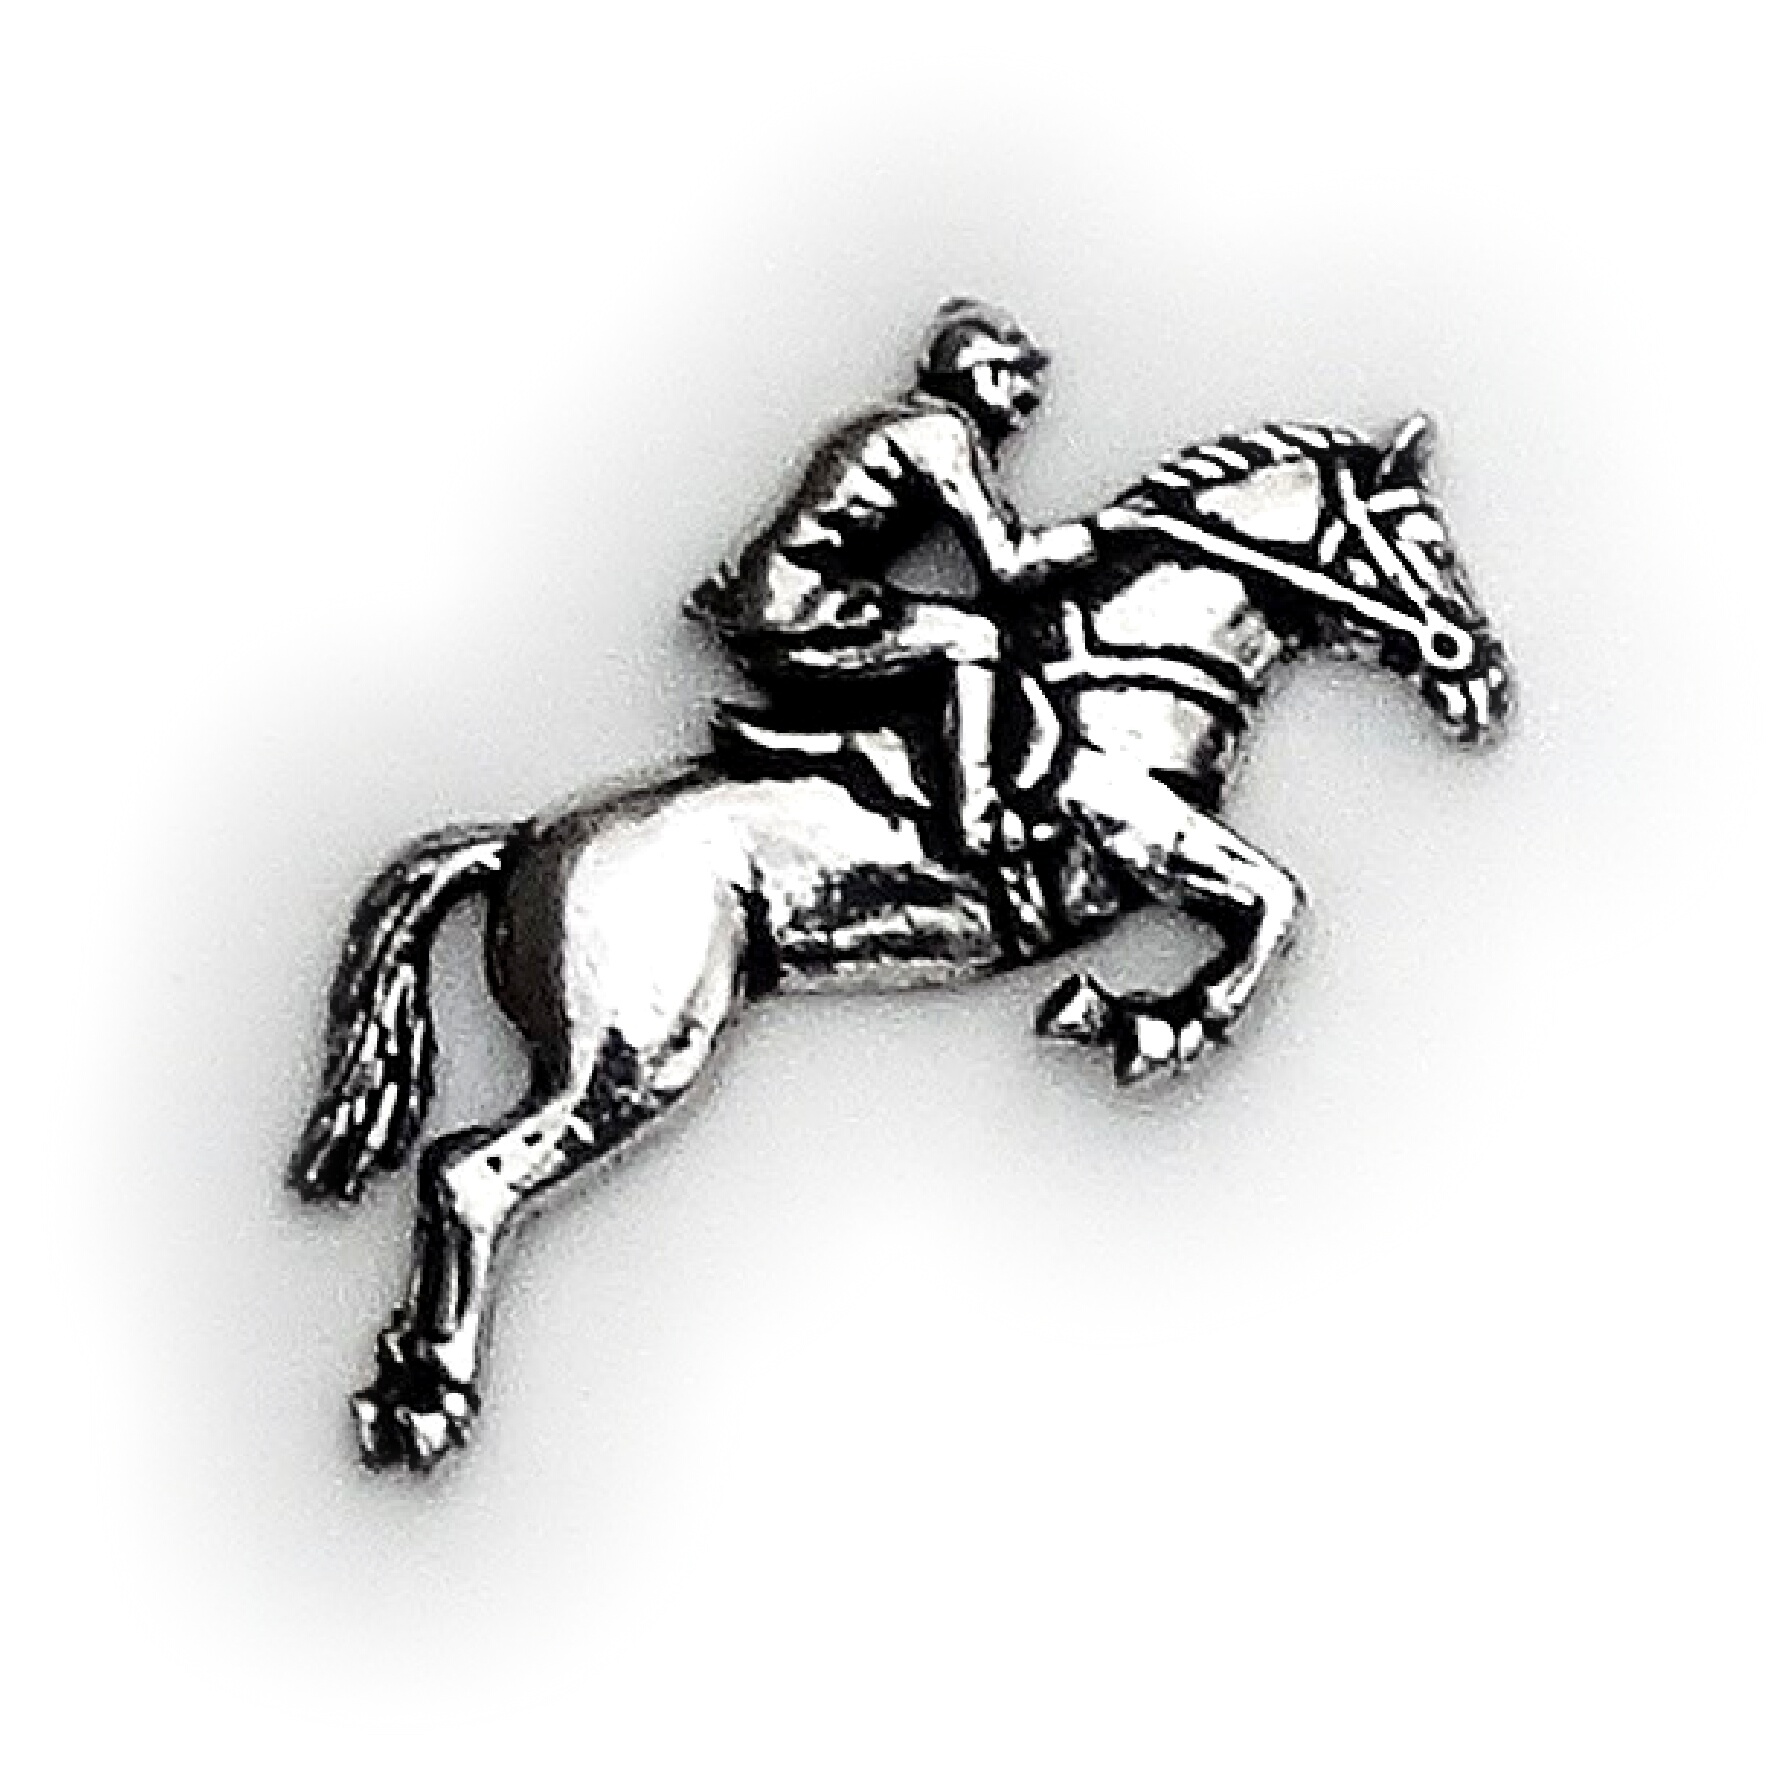 Odznak kôň s jazdcom